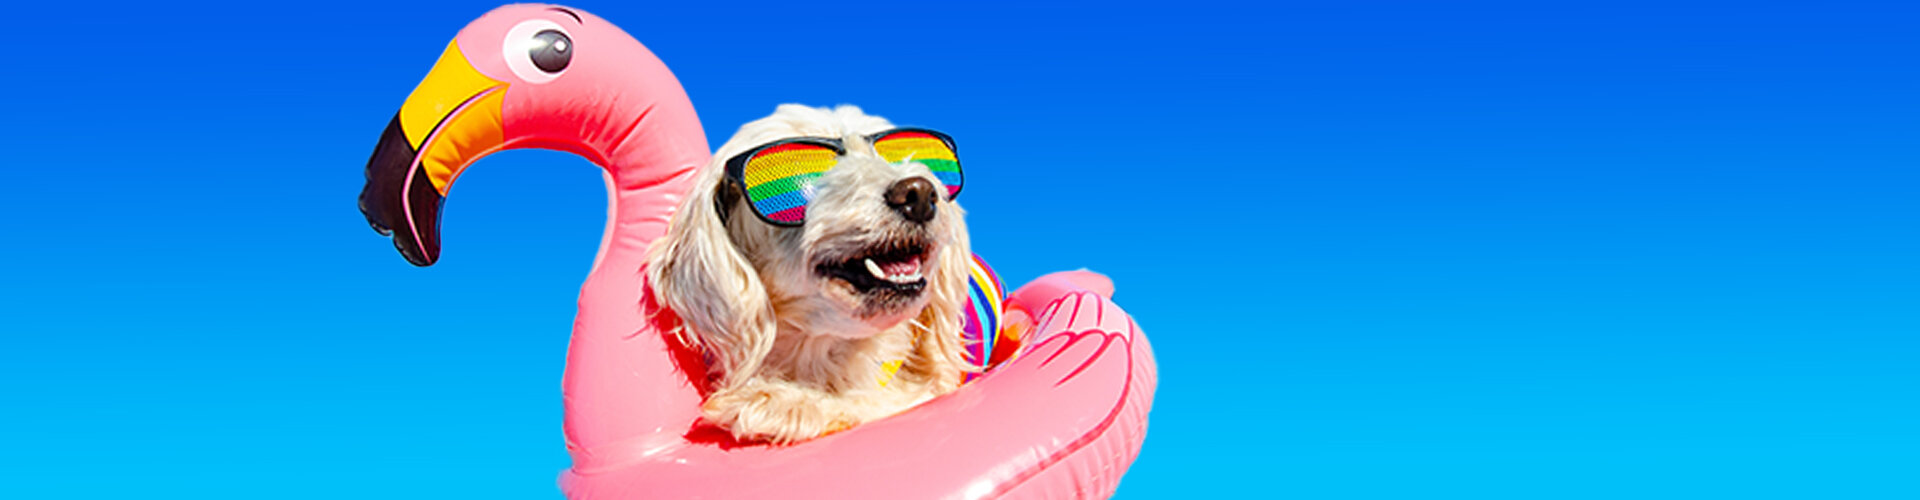 Bild: Hund mit Flamingo-Schwimmreifen und Sonnenbrille.